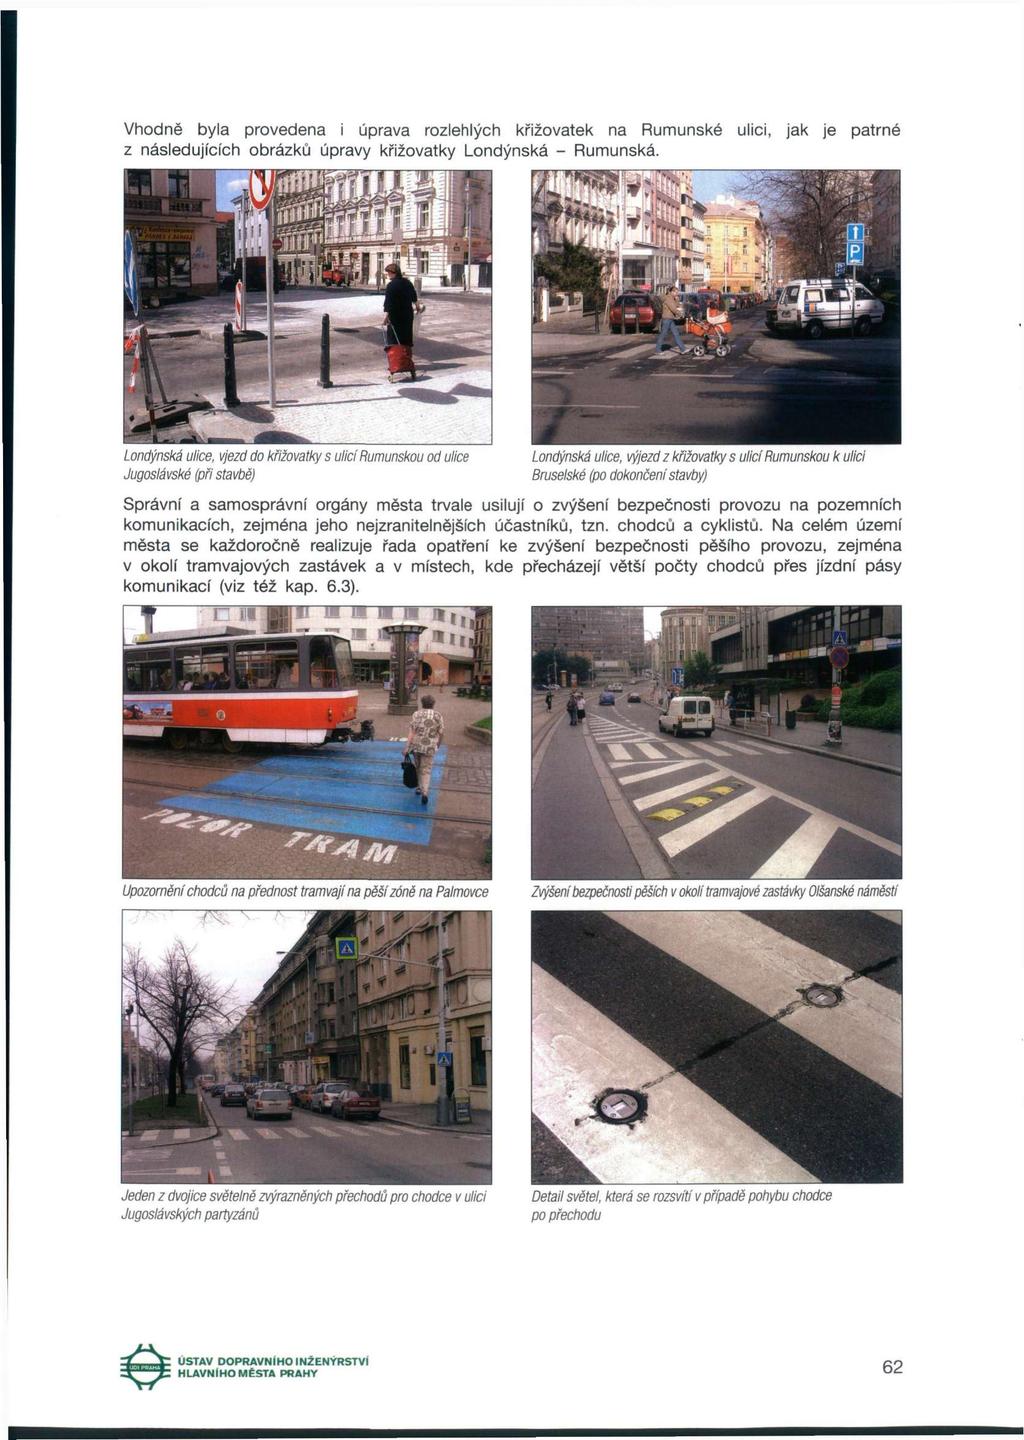 Vhodně byla provedena i úprava rozlehlých křižovatek na Rumunské ulici, jak je patrné z následujících obrázků úpravy křižovatky Londýnská - Rumunská.